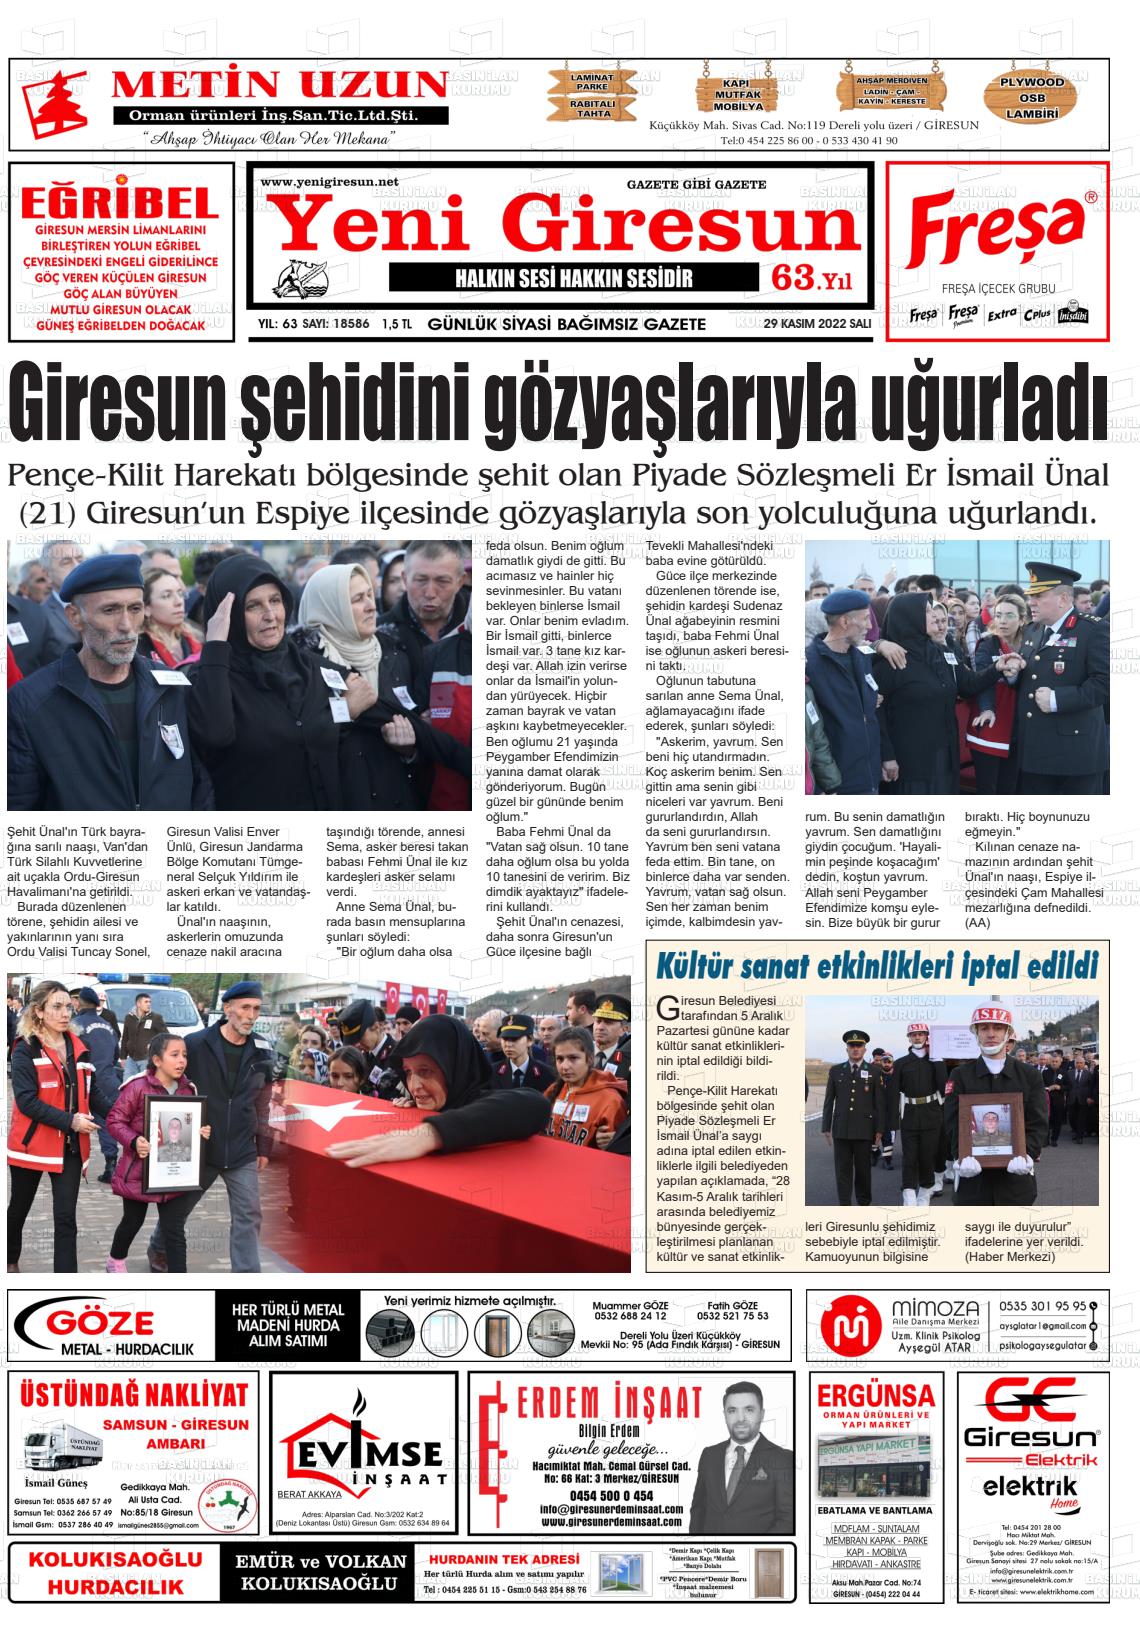 29 Kasım 2022 Yeni Giresun Gazete Manşeti